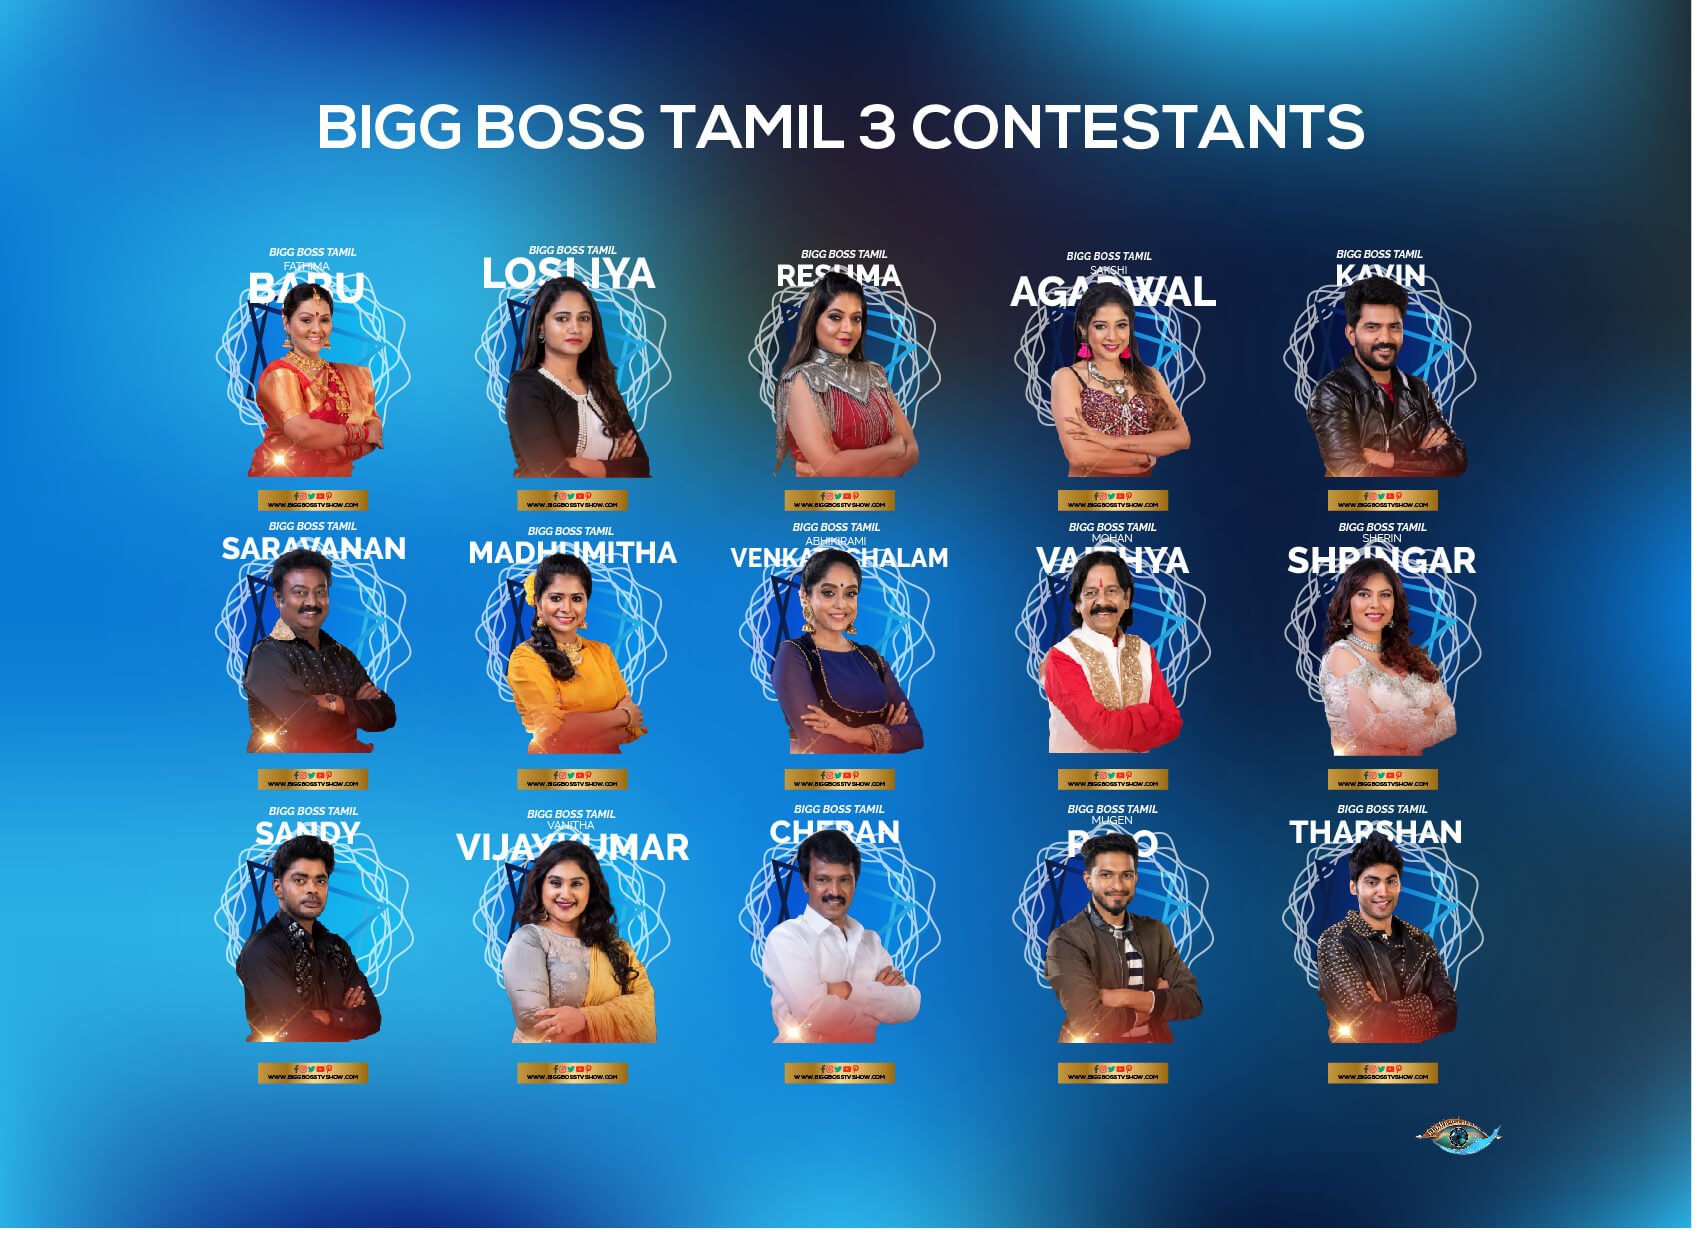 Bigg Boss Tv Show on Twitter: "Bigg Tamil 3 Contestants List https://t.co/hQpCPrlu0O #biggbosstamil #biggbosstamilcontestants #biggbosstvshow #biggboss3 https://t.co/SbxWYIQakd" Twitter